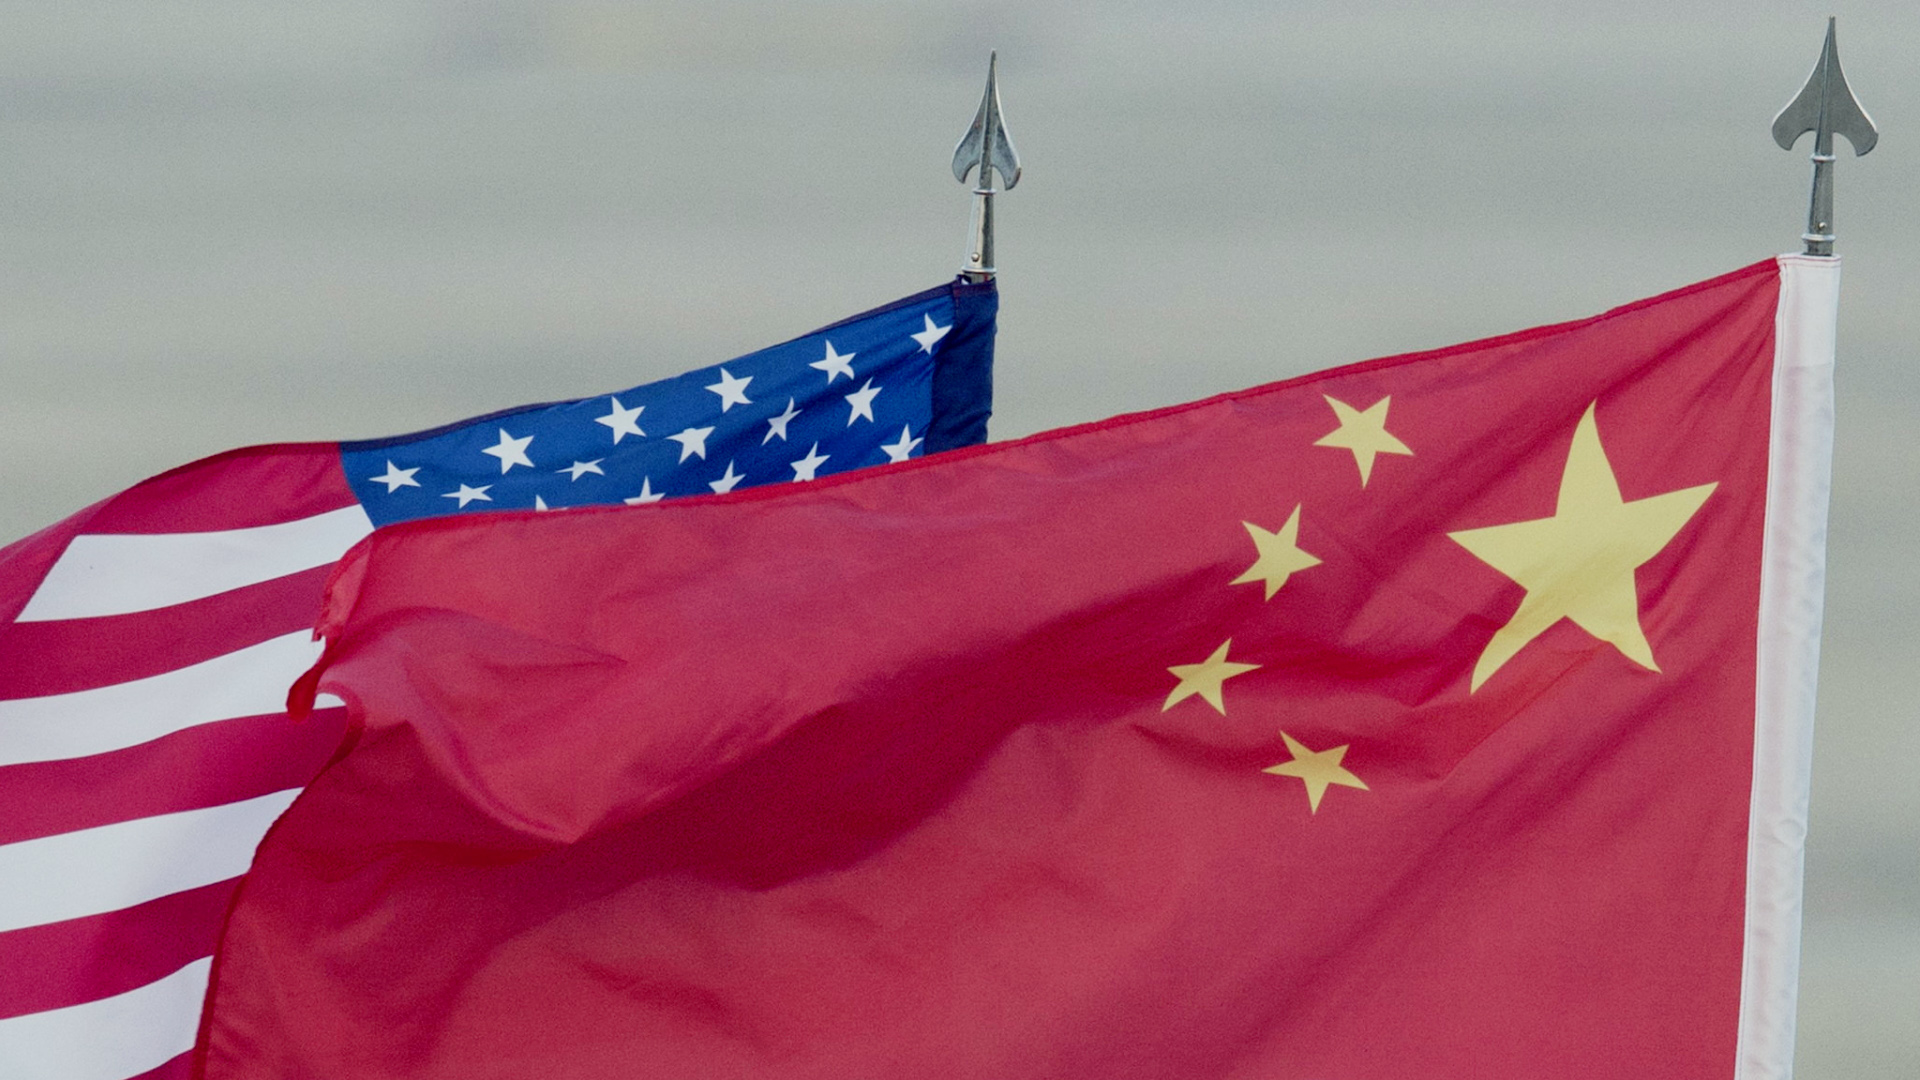 Flagge der USA und Chinas